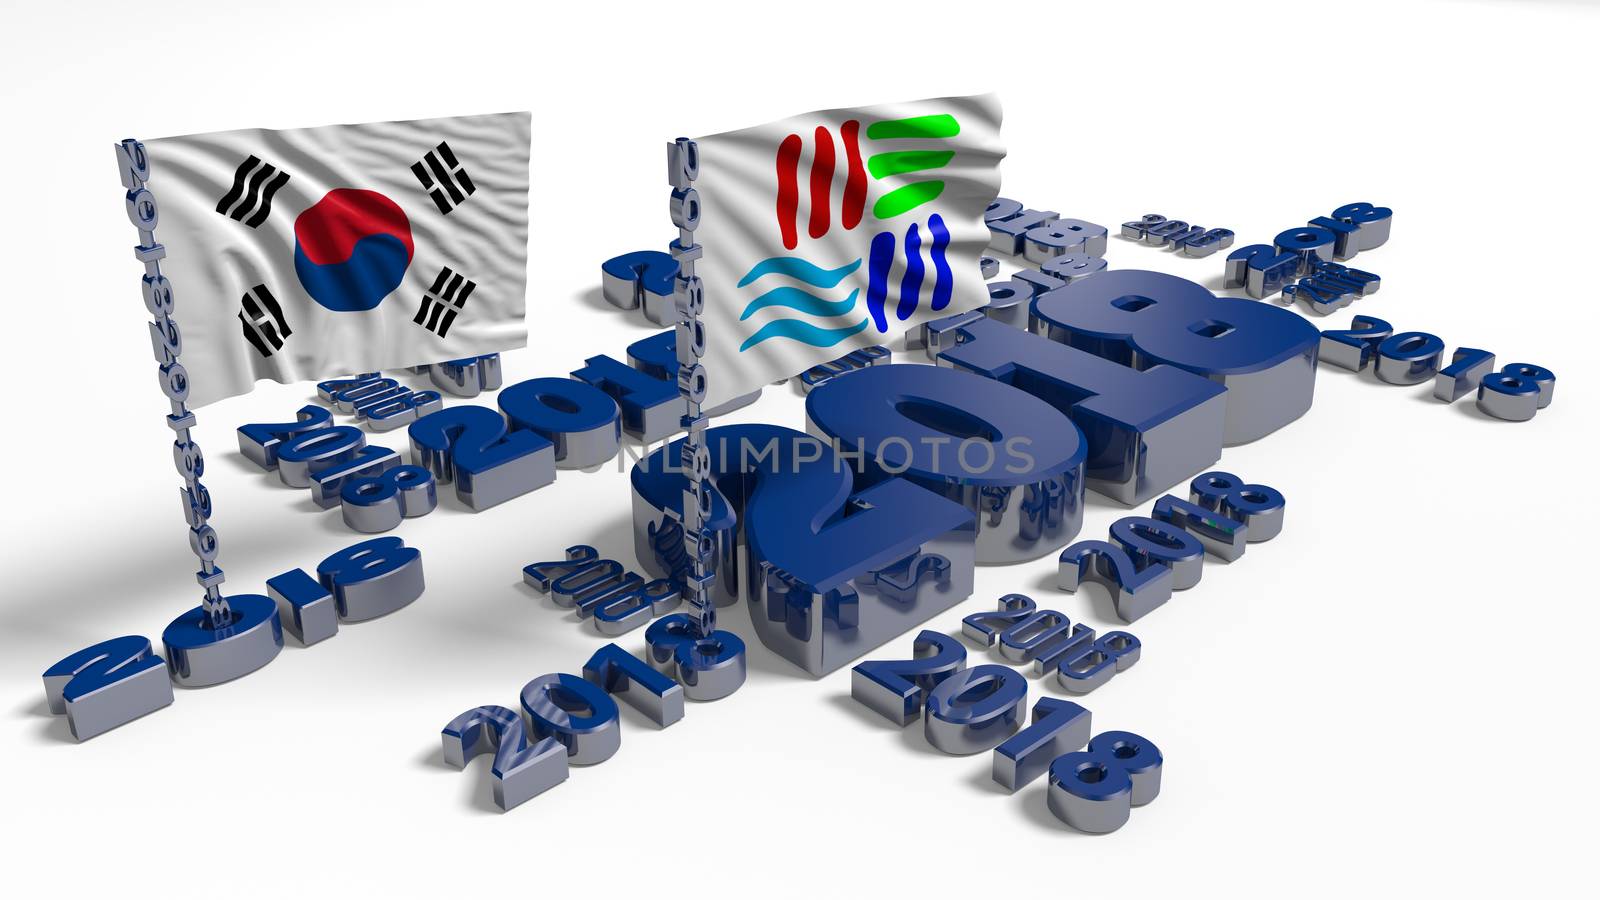 2018 Korean and Pyeongchang Flags by shkyo30